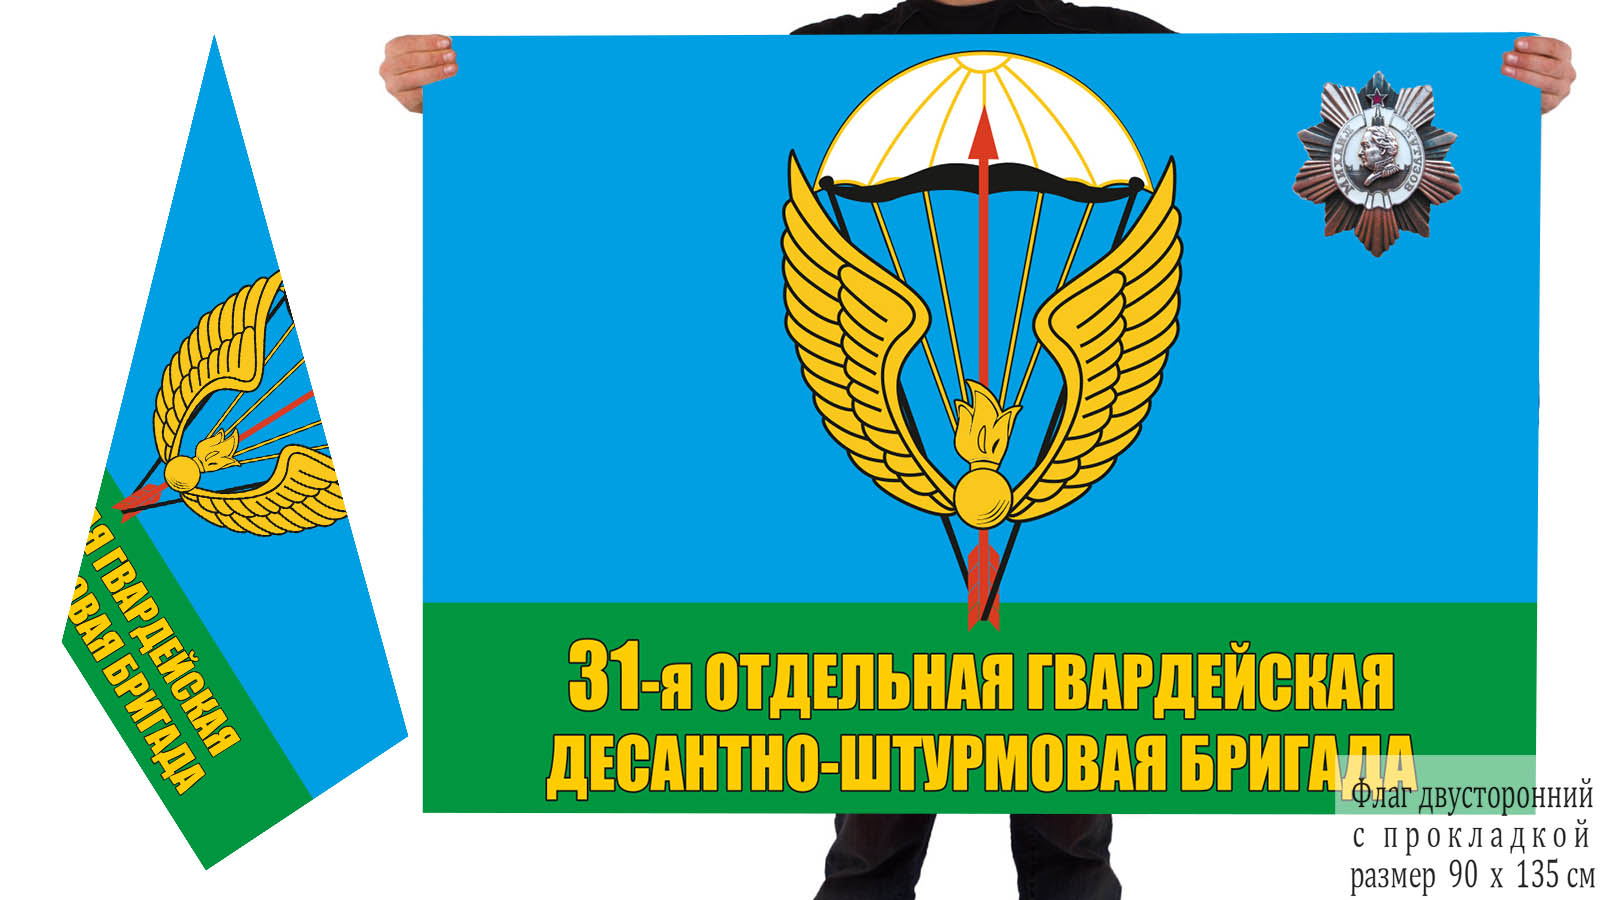 Двусторонний флаг 31 гв. отдельной десантно-штурмовой бригады